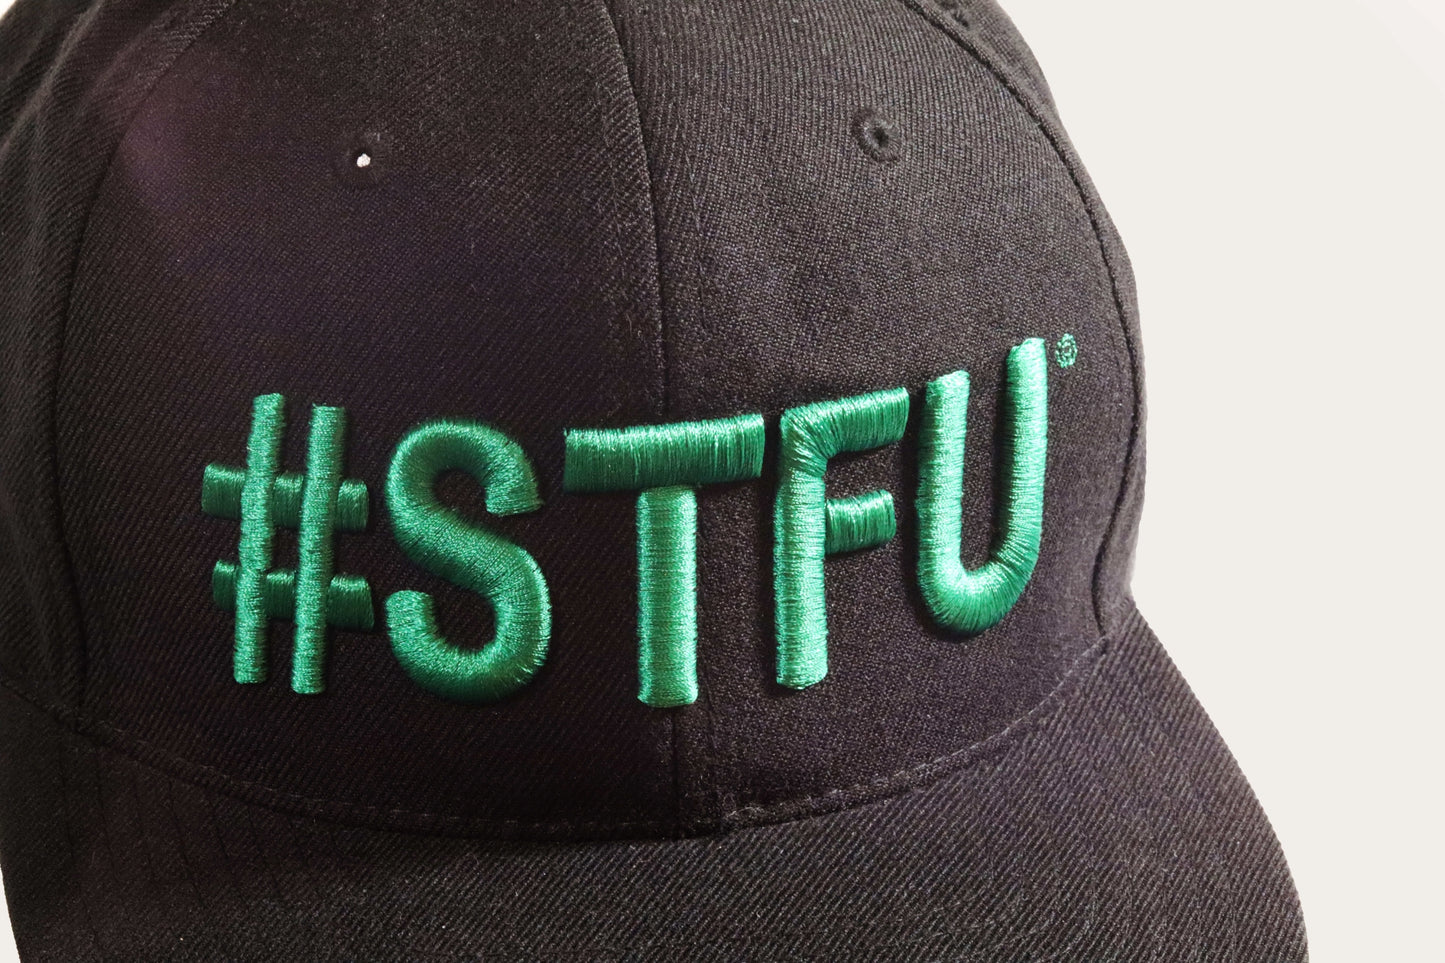 #STFU HAT "LIMITED RUN"